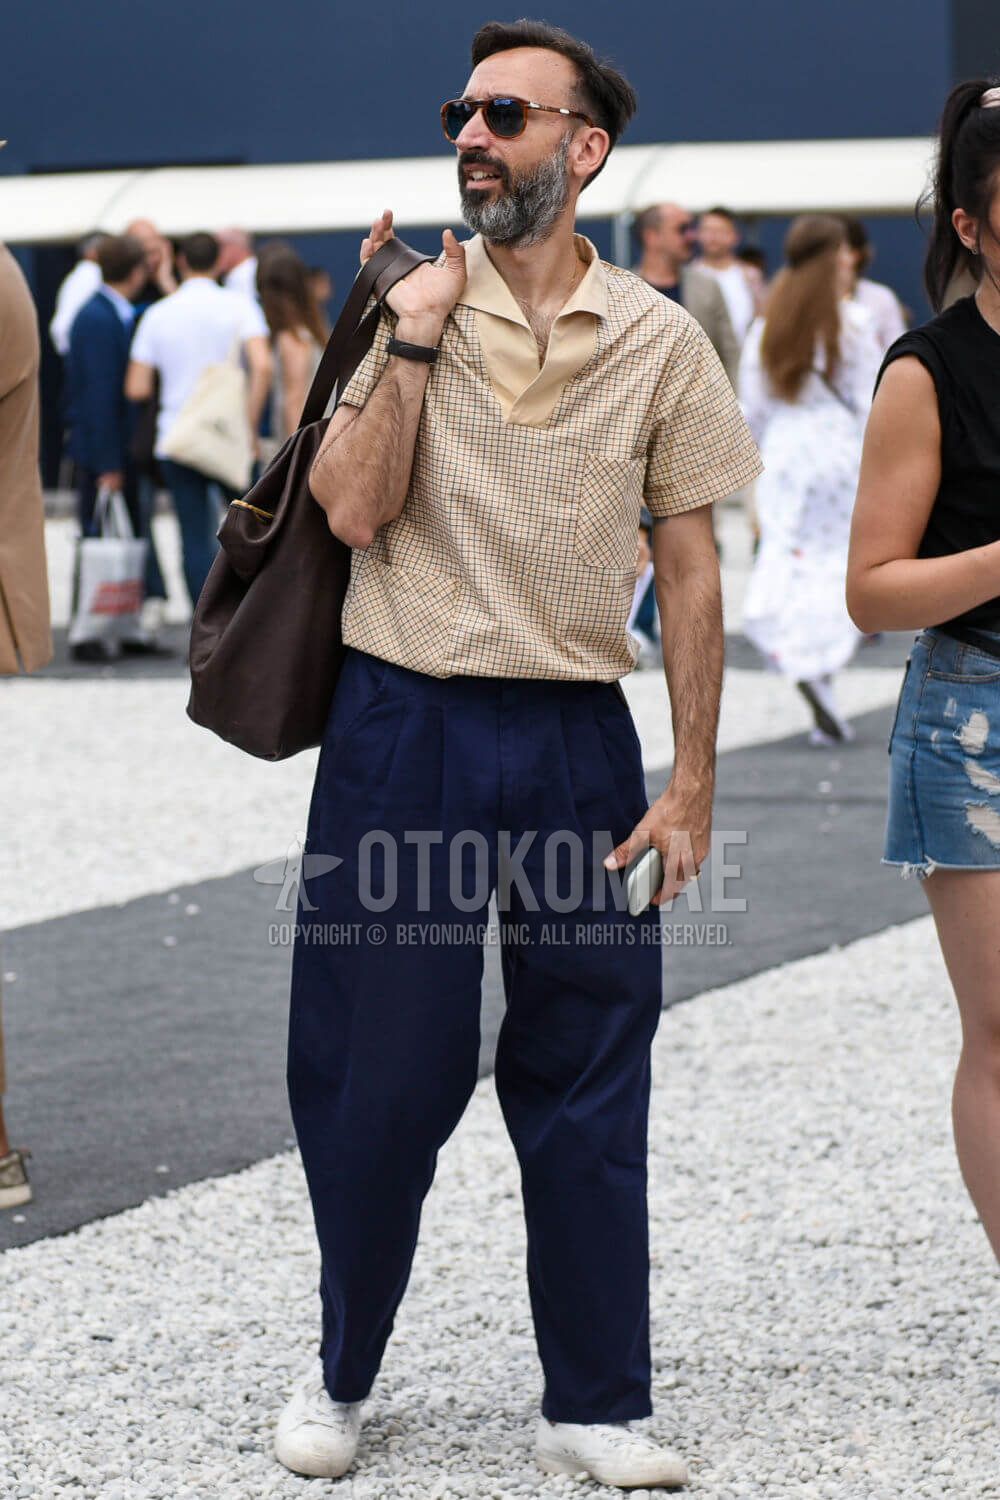 夏靴 特集 メンズにおすすめのシューズ サンダル15カテゴリーを注目の着こなしとともに一挙紹介 メンズファッションメディア Otokomaeotokomae 男前研究所